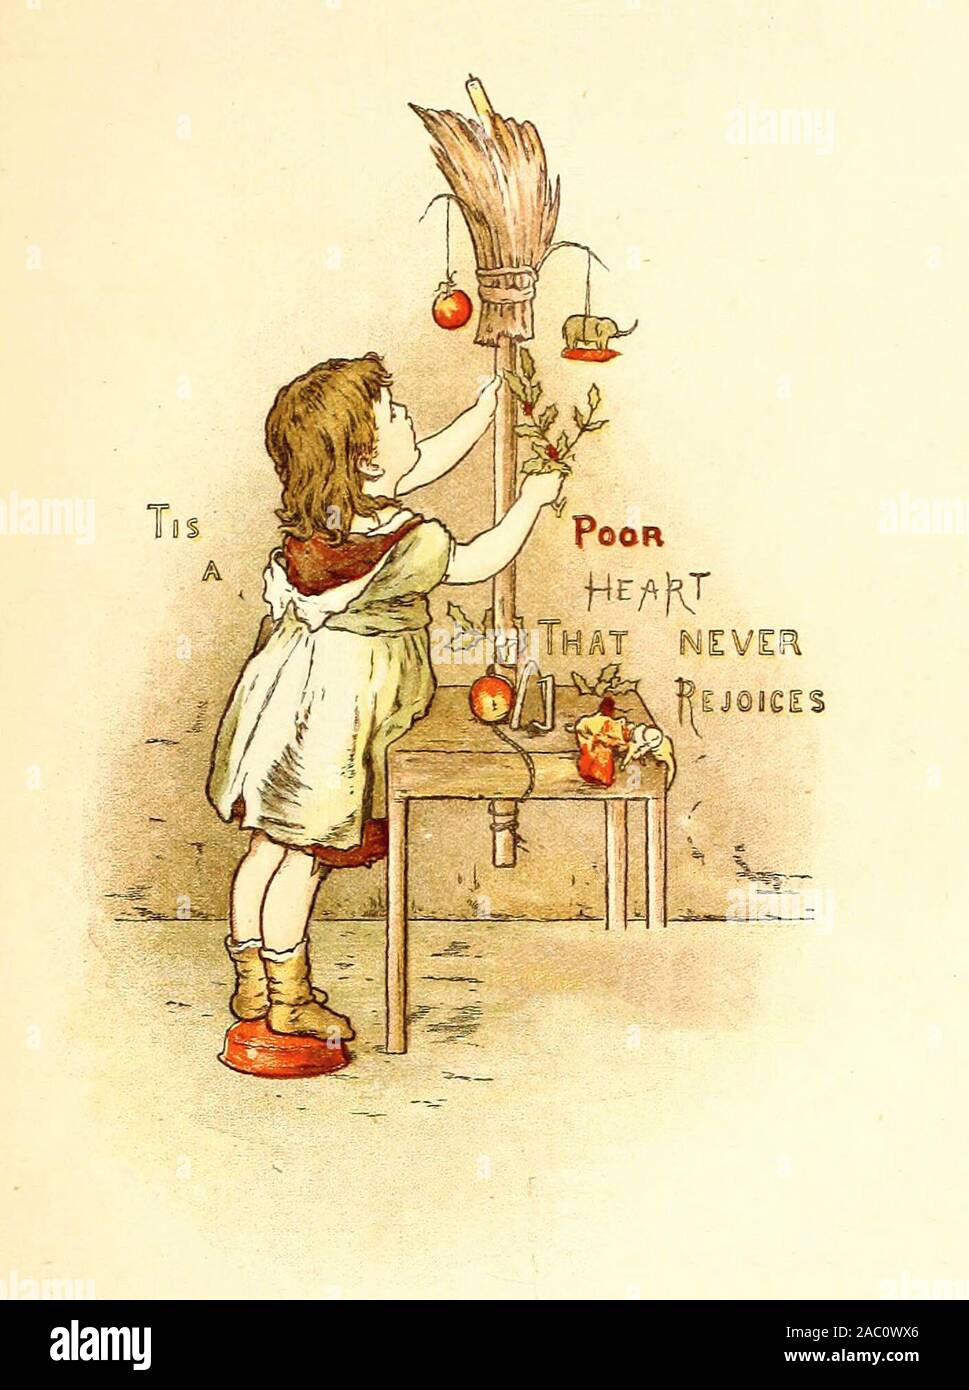 Un pauvre Cœur qu'tis se réjouit jamais - Une illustration Vintage de un vieux proverbe. Banque D'Images